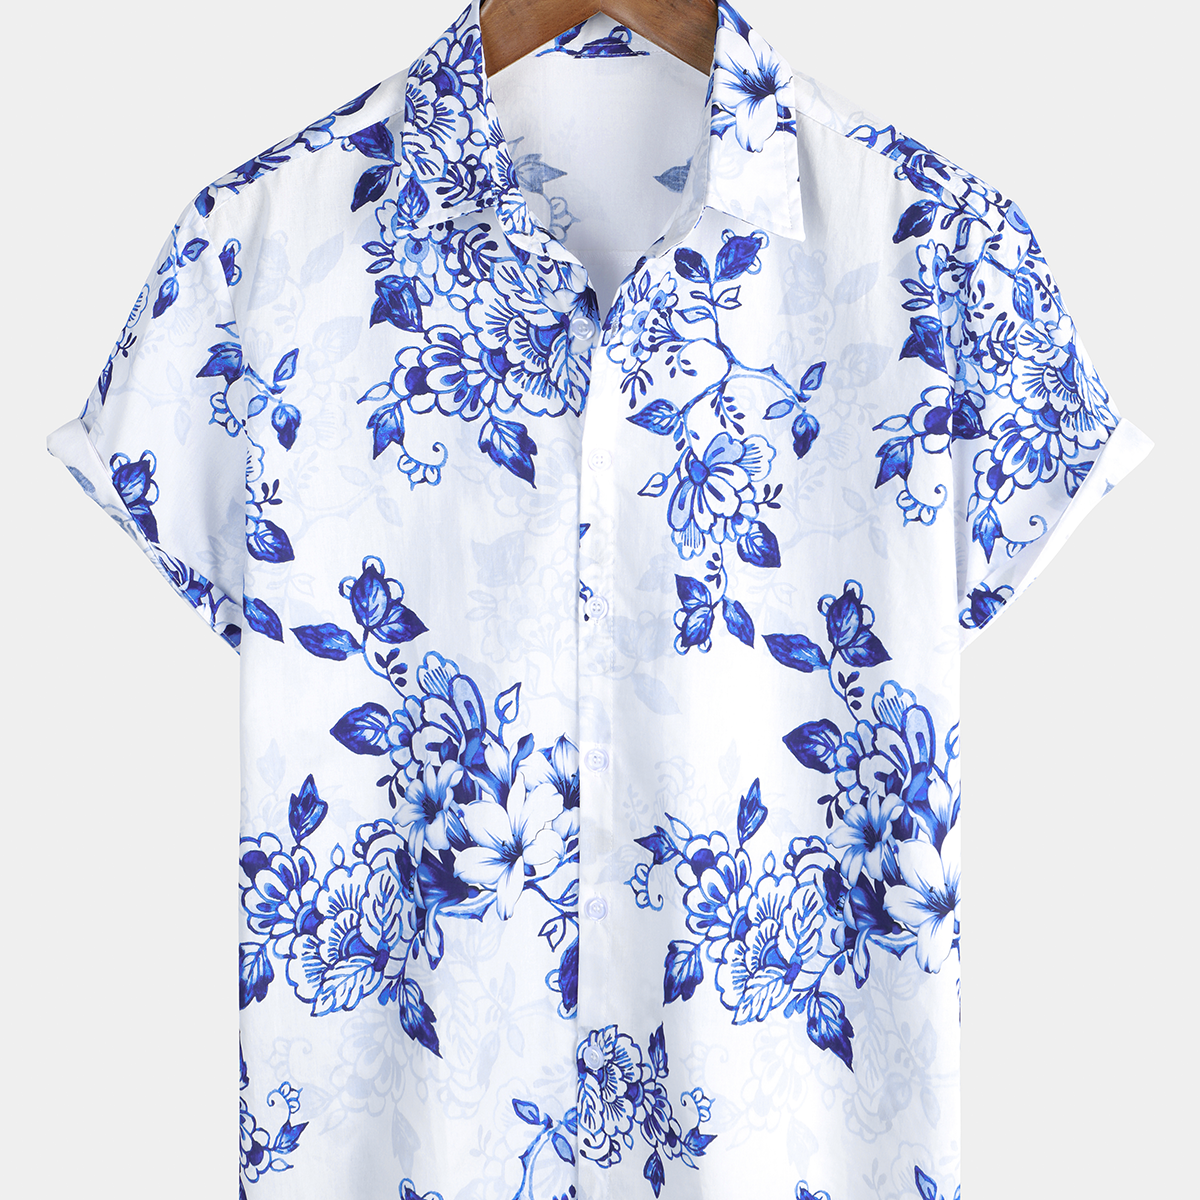 Men's Cotton Beach Blue Floral Hawaiian Button Up Shirt